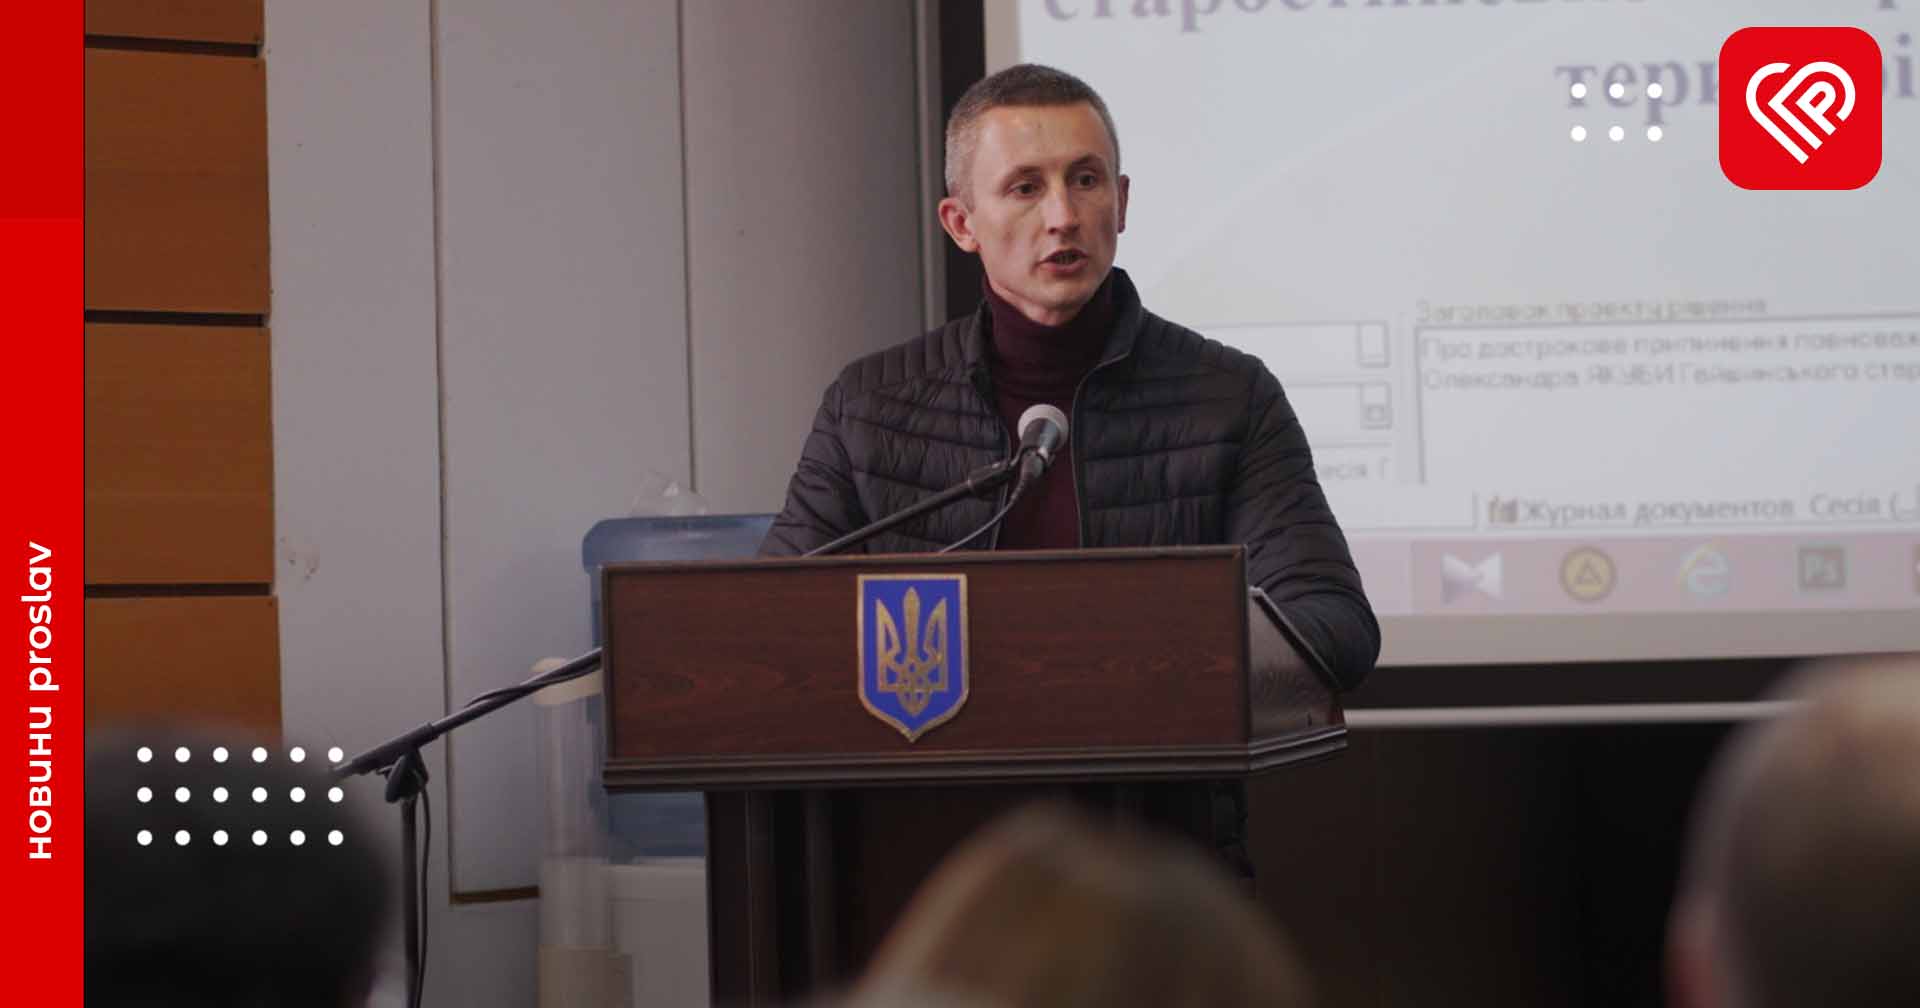 Староста села Гайшин Олександр Якуба написав заяву на звільнення: що буде далі